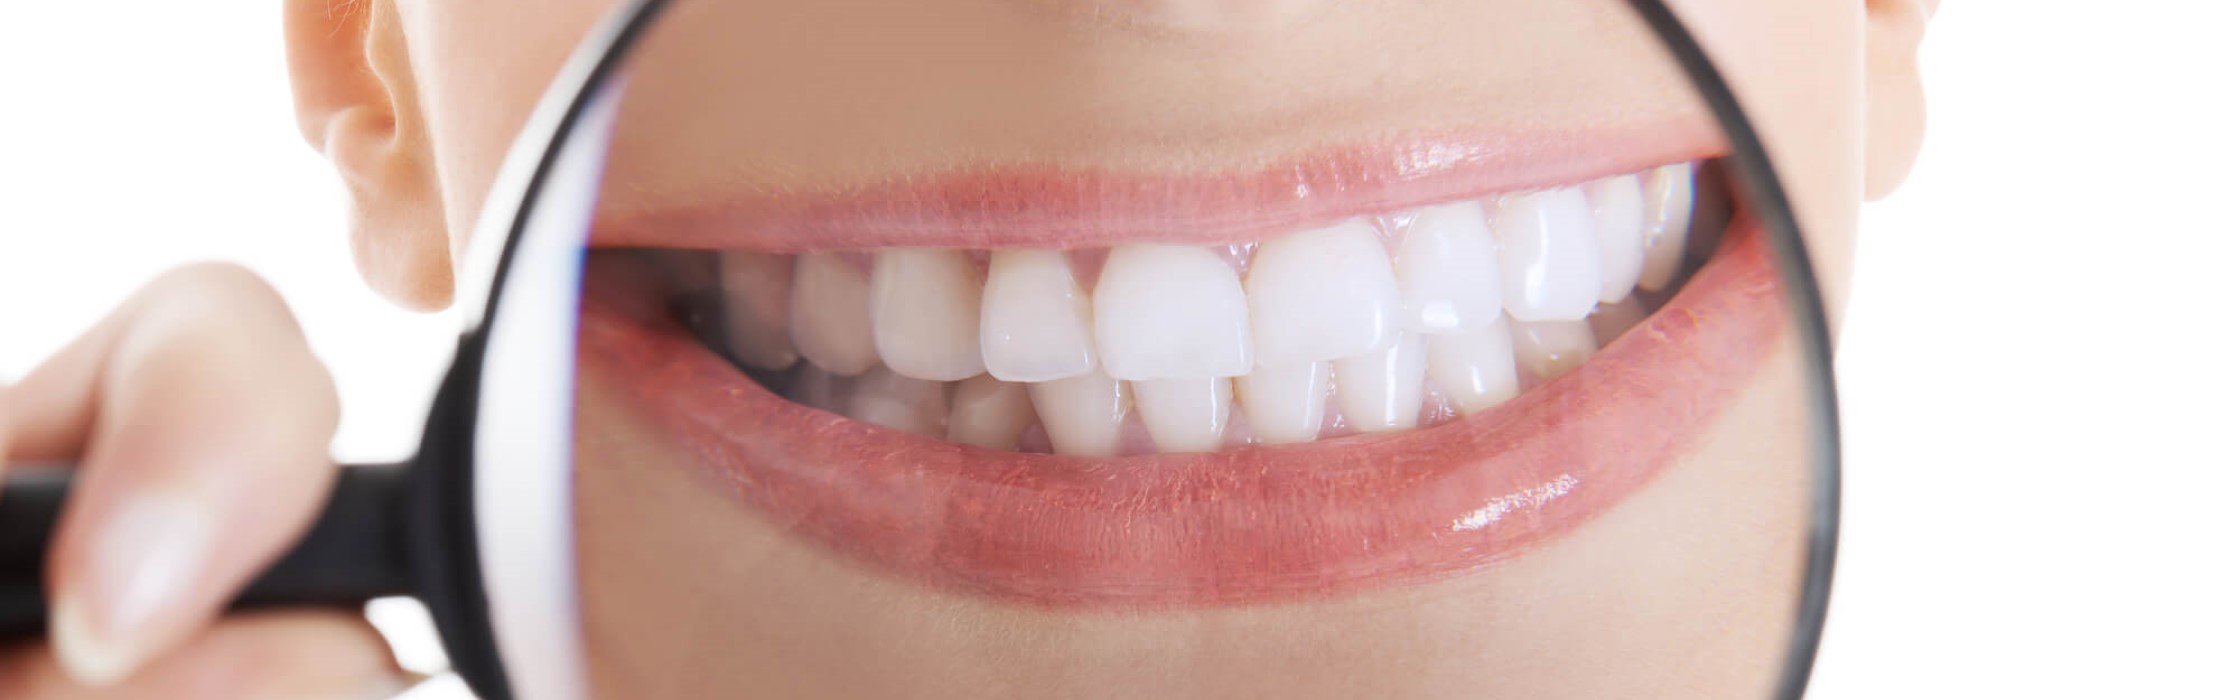 Zahnaufbau: So sind die menschlichen Zähne aufgebaut